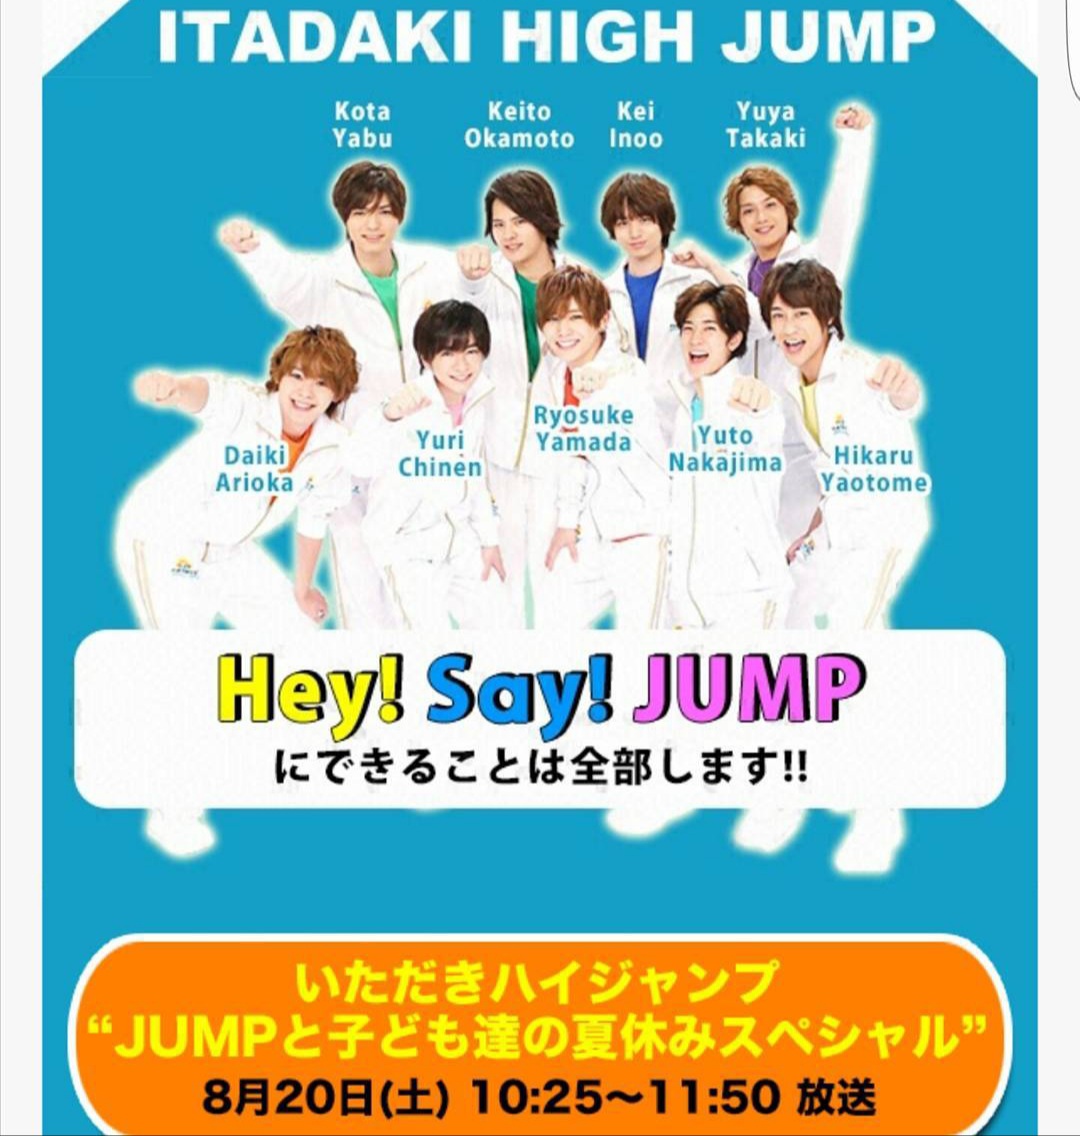 「いただきハイジャンプ“JUMPと子ども達の夏休みスペシャル」出演”